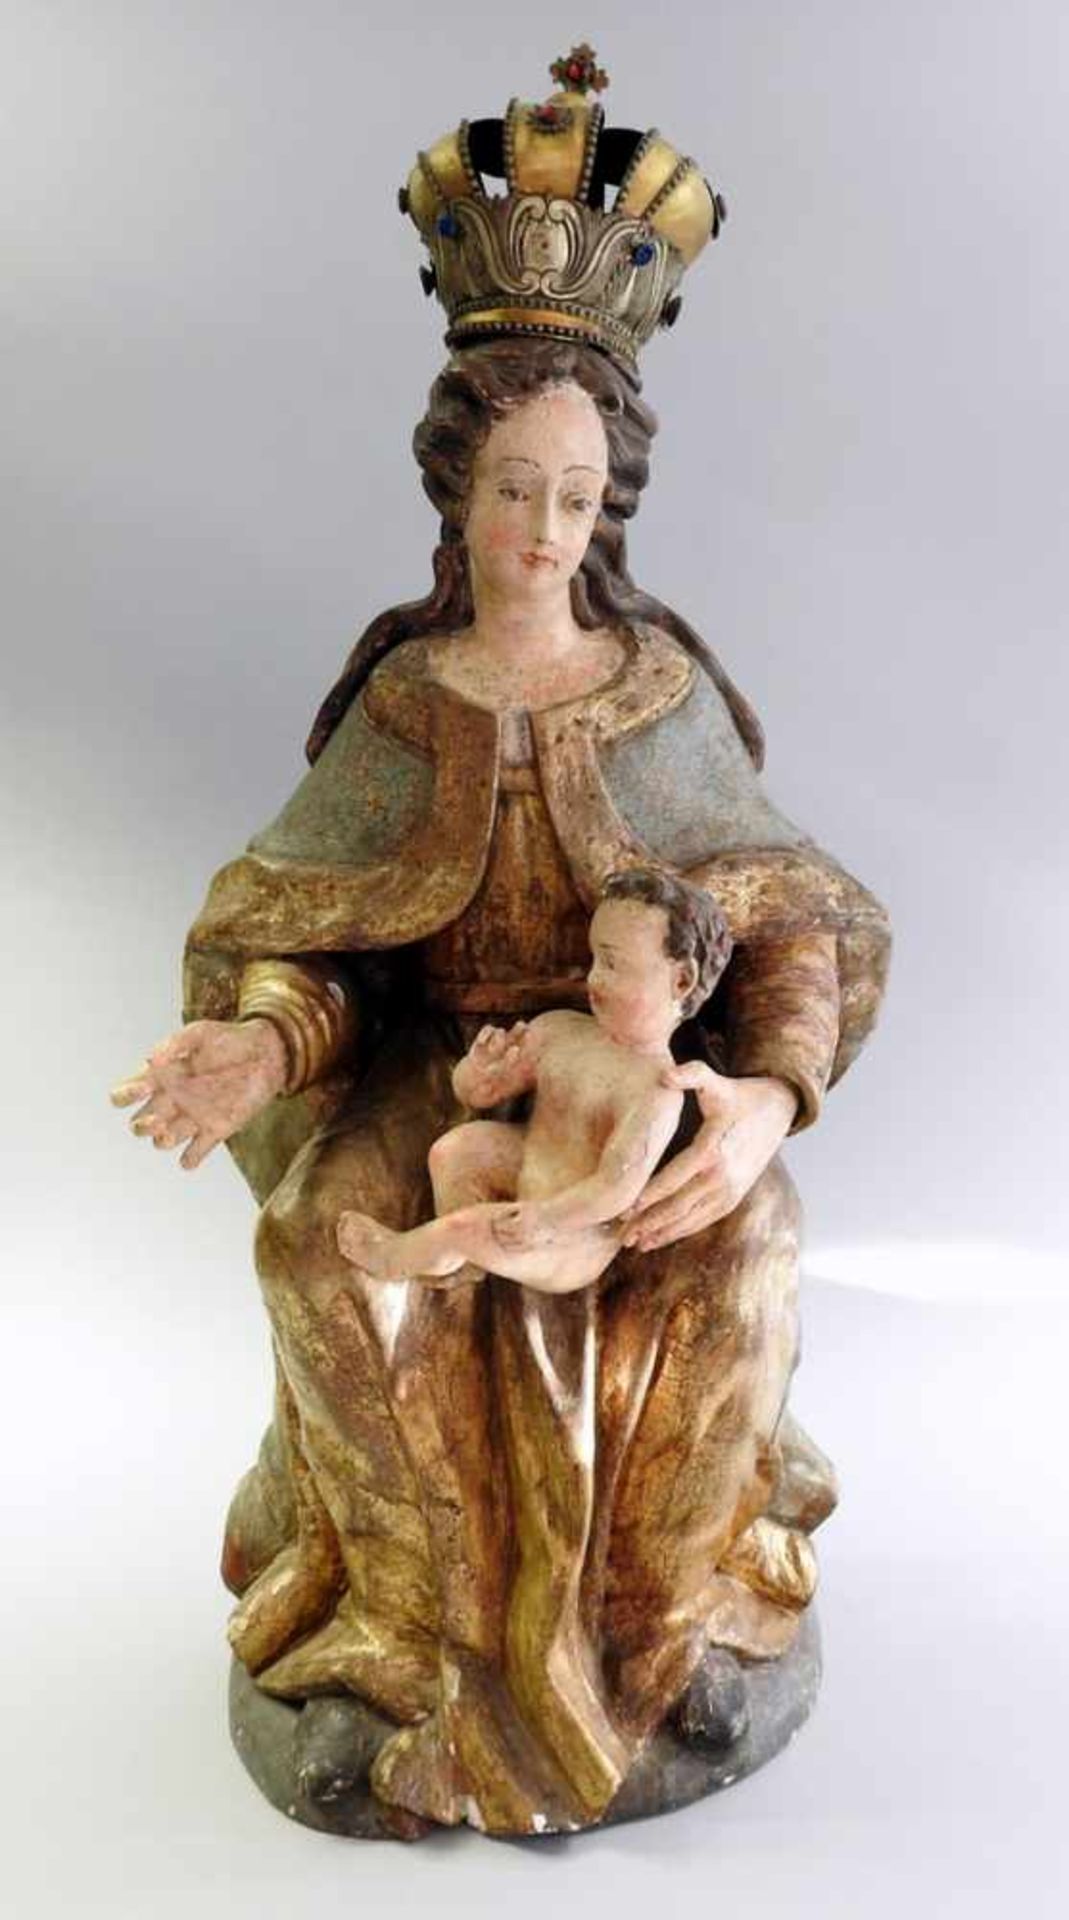 Barocke Maria mit Kind Holz geschnitzt, polychrom und gold staffiert. Maria mit Metallkrone, Krone